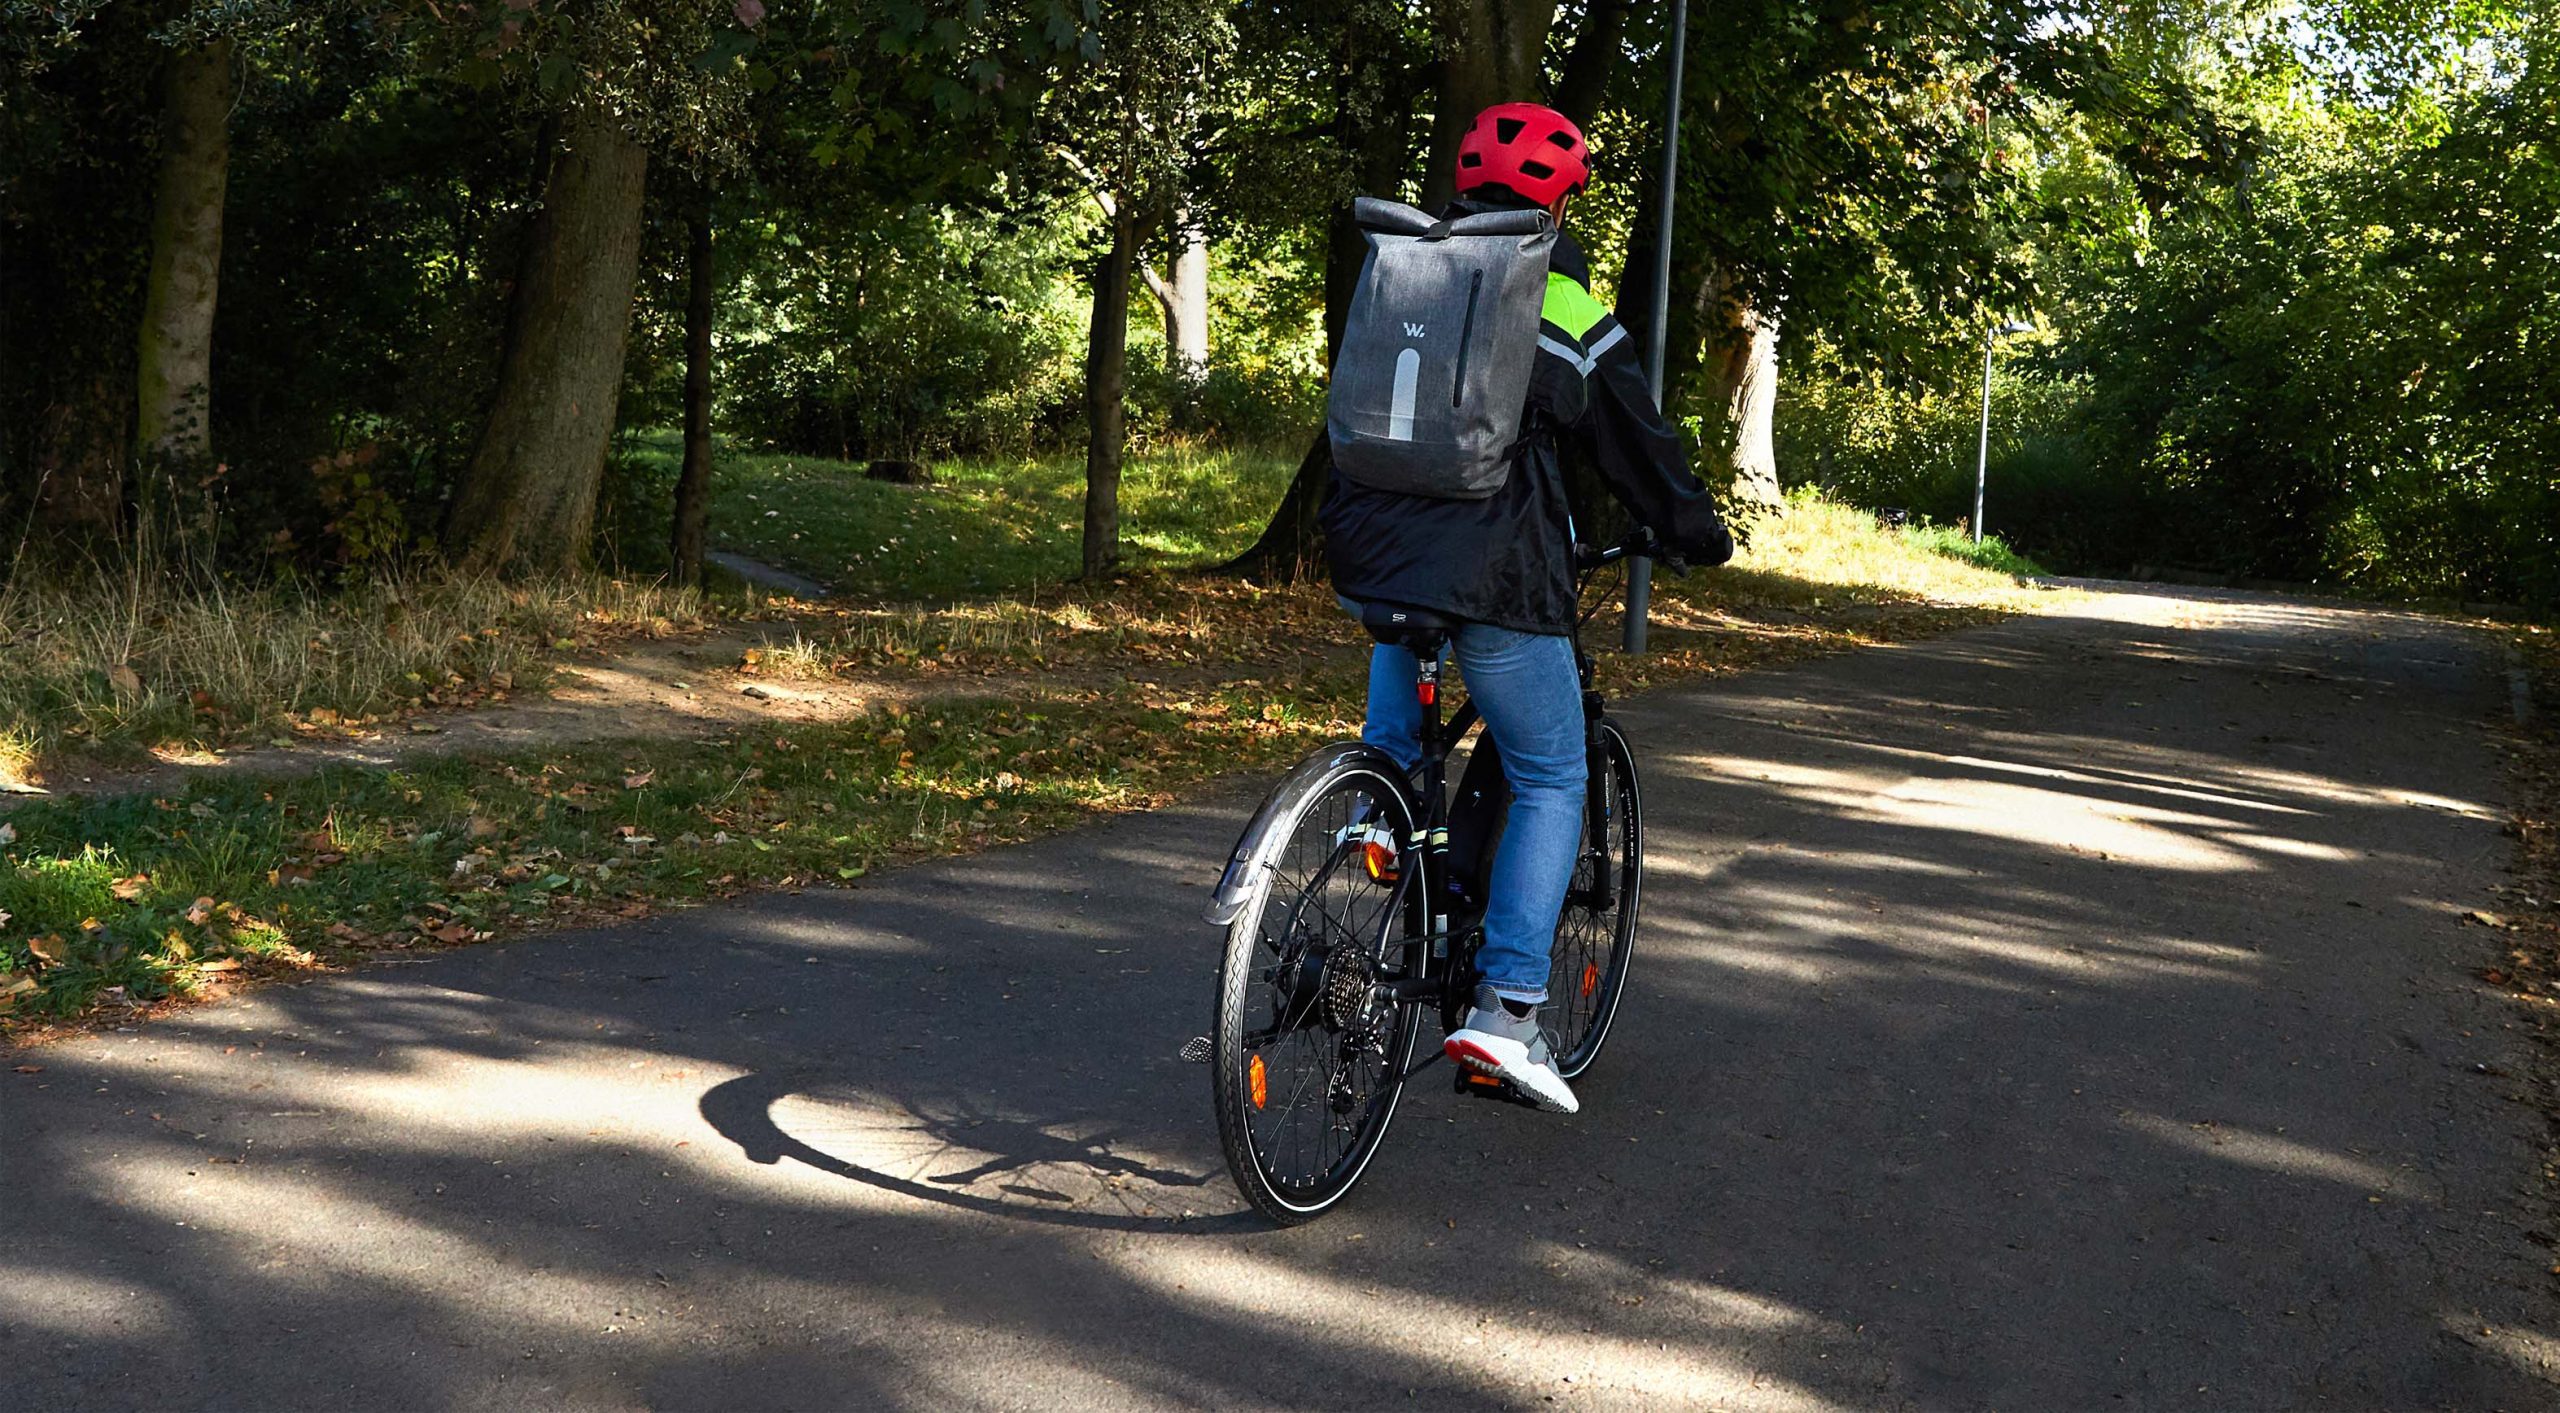 Accessoires et équipement pour vélo urbain